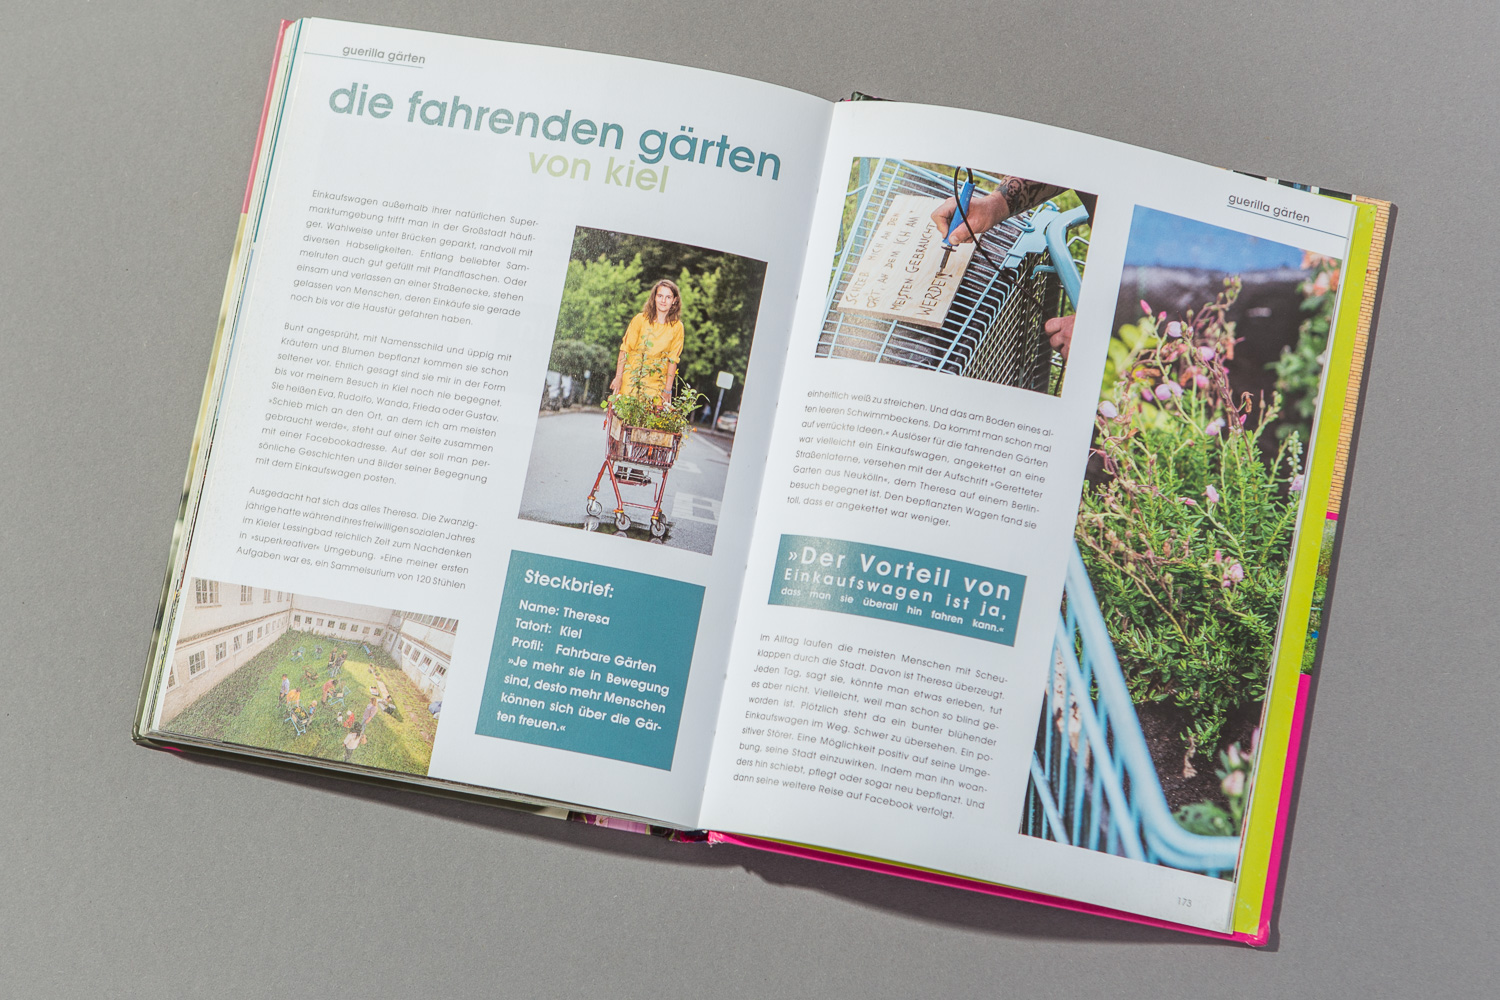 Konzept Gartenbuch urban gardening